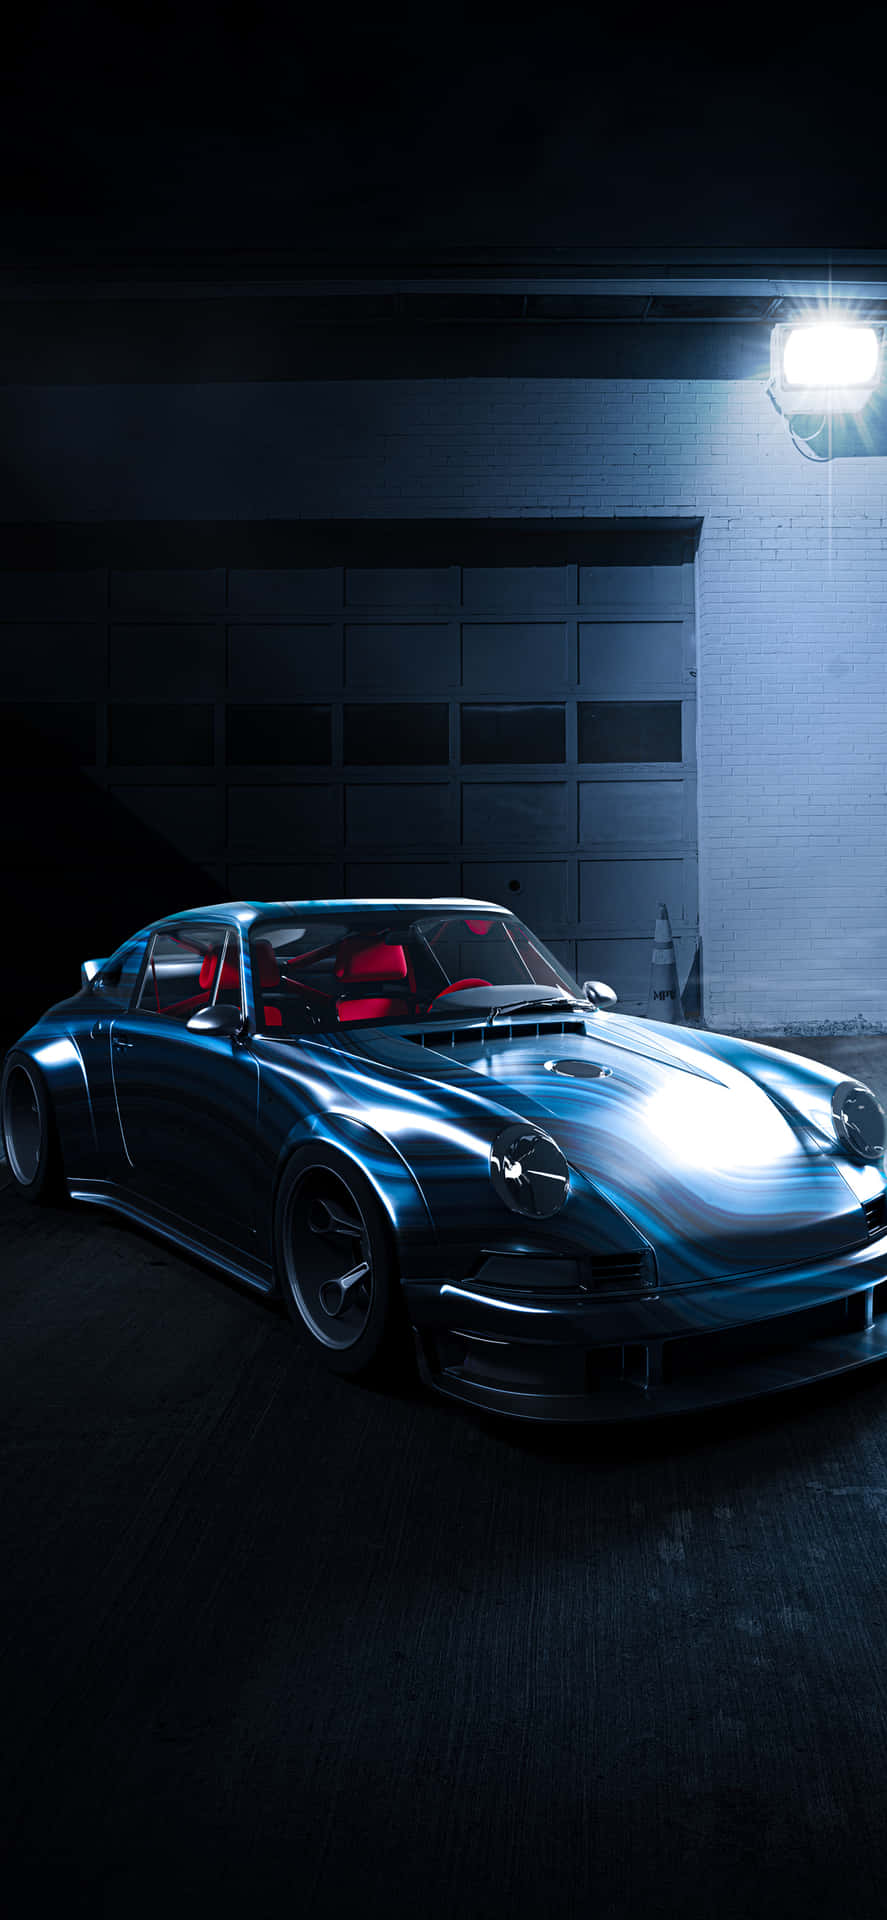 Fondode Pantalla De Iphone De Porsche: Una Experiencia Visual Deslumbrante. Fondo de pantalla